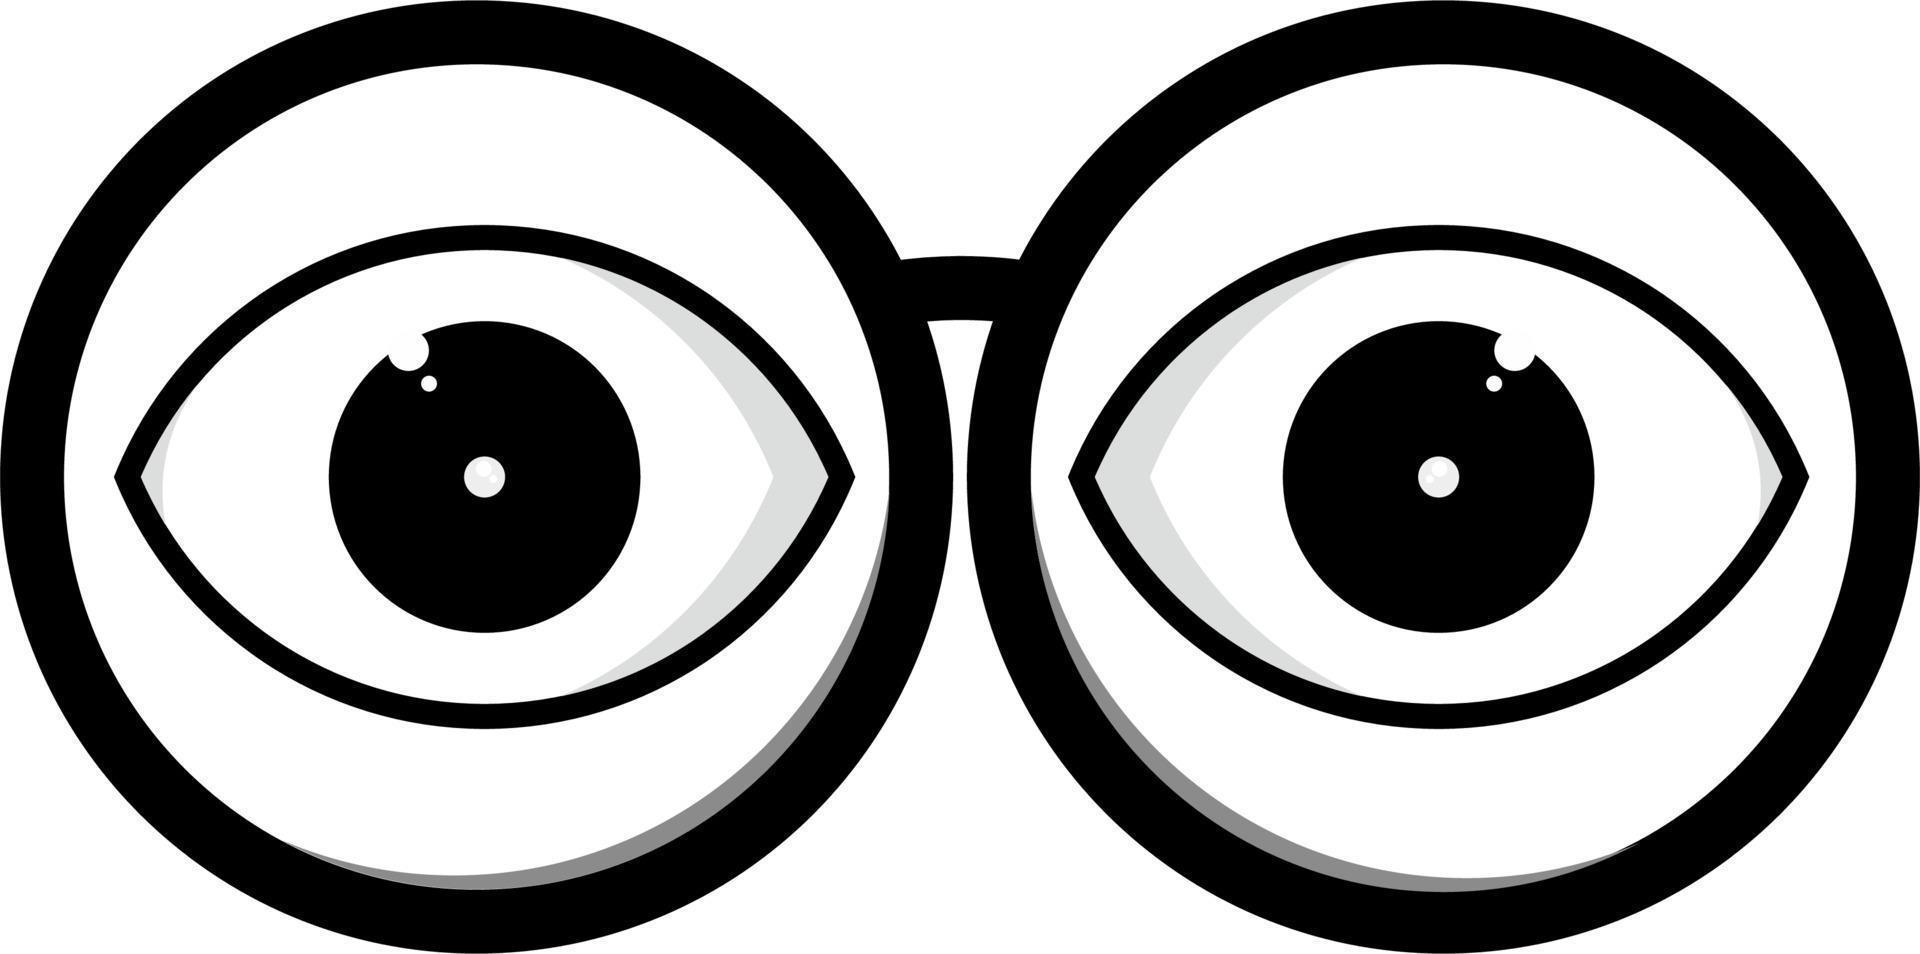 illustration vectorielle de l'icône de lunettes rondes. vecteur